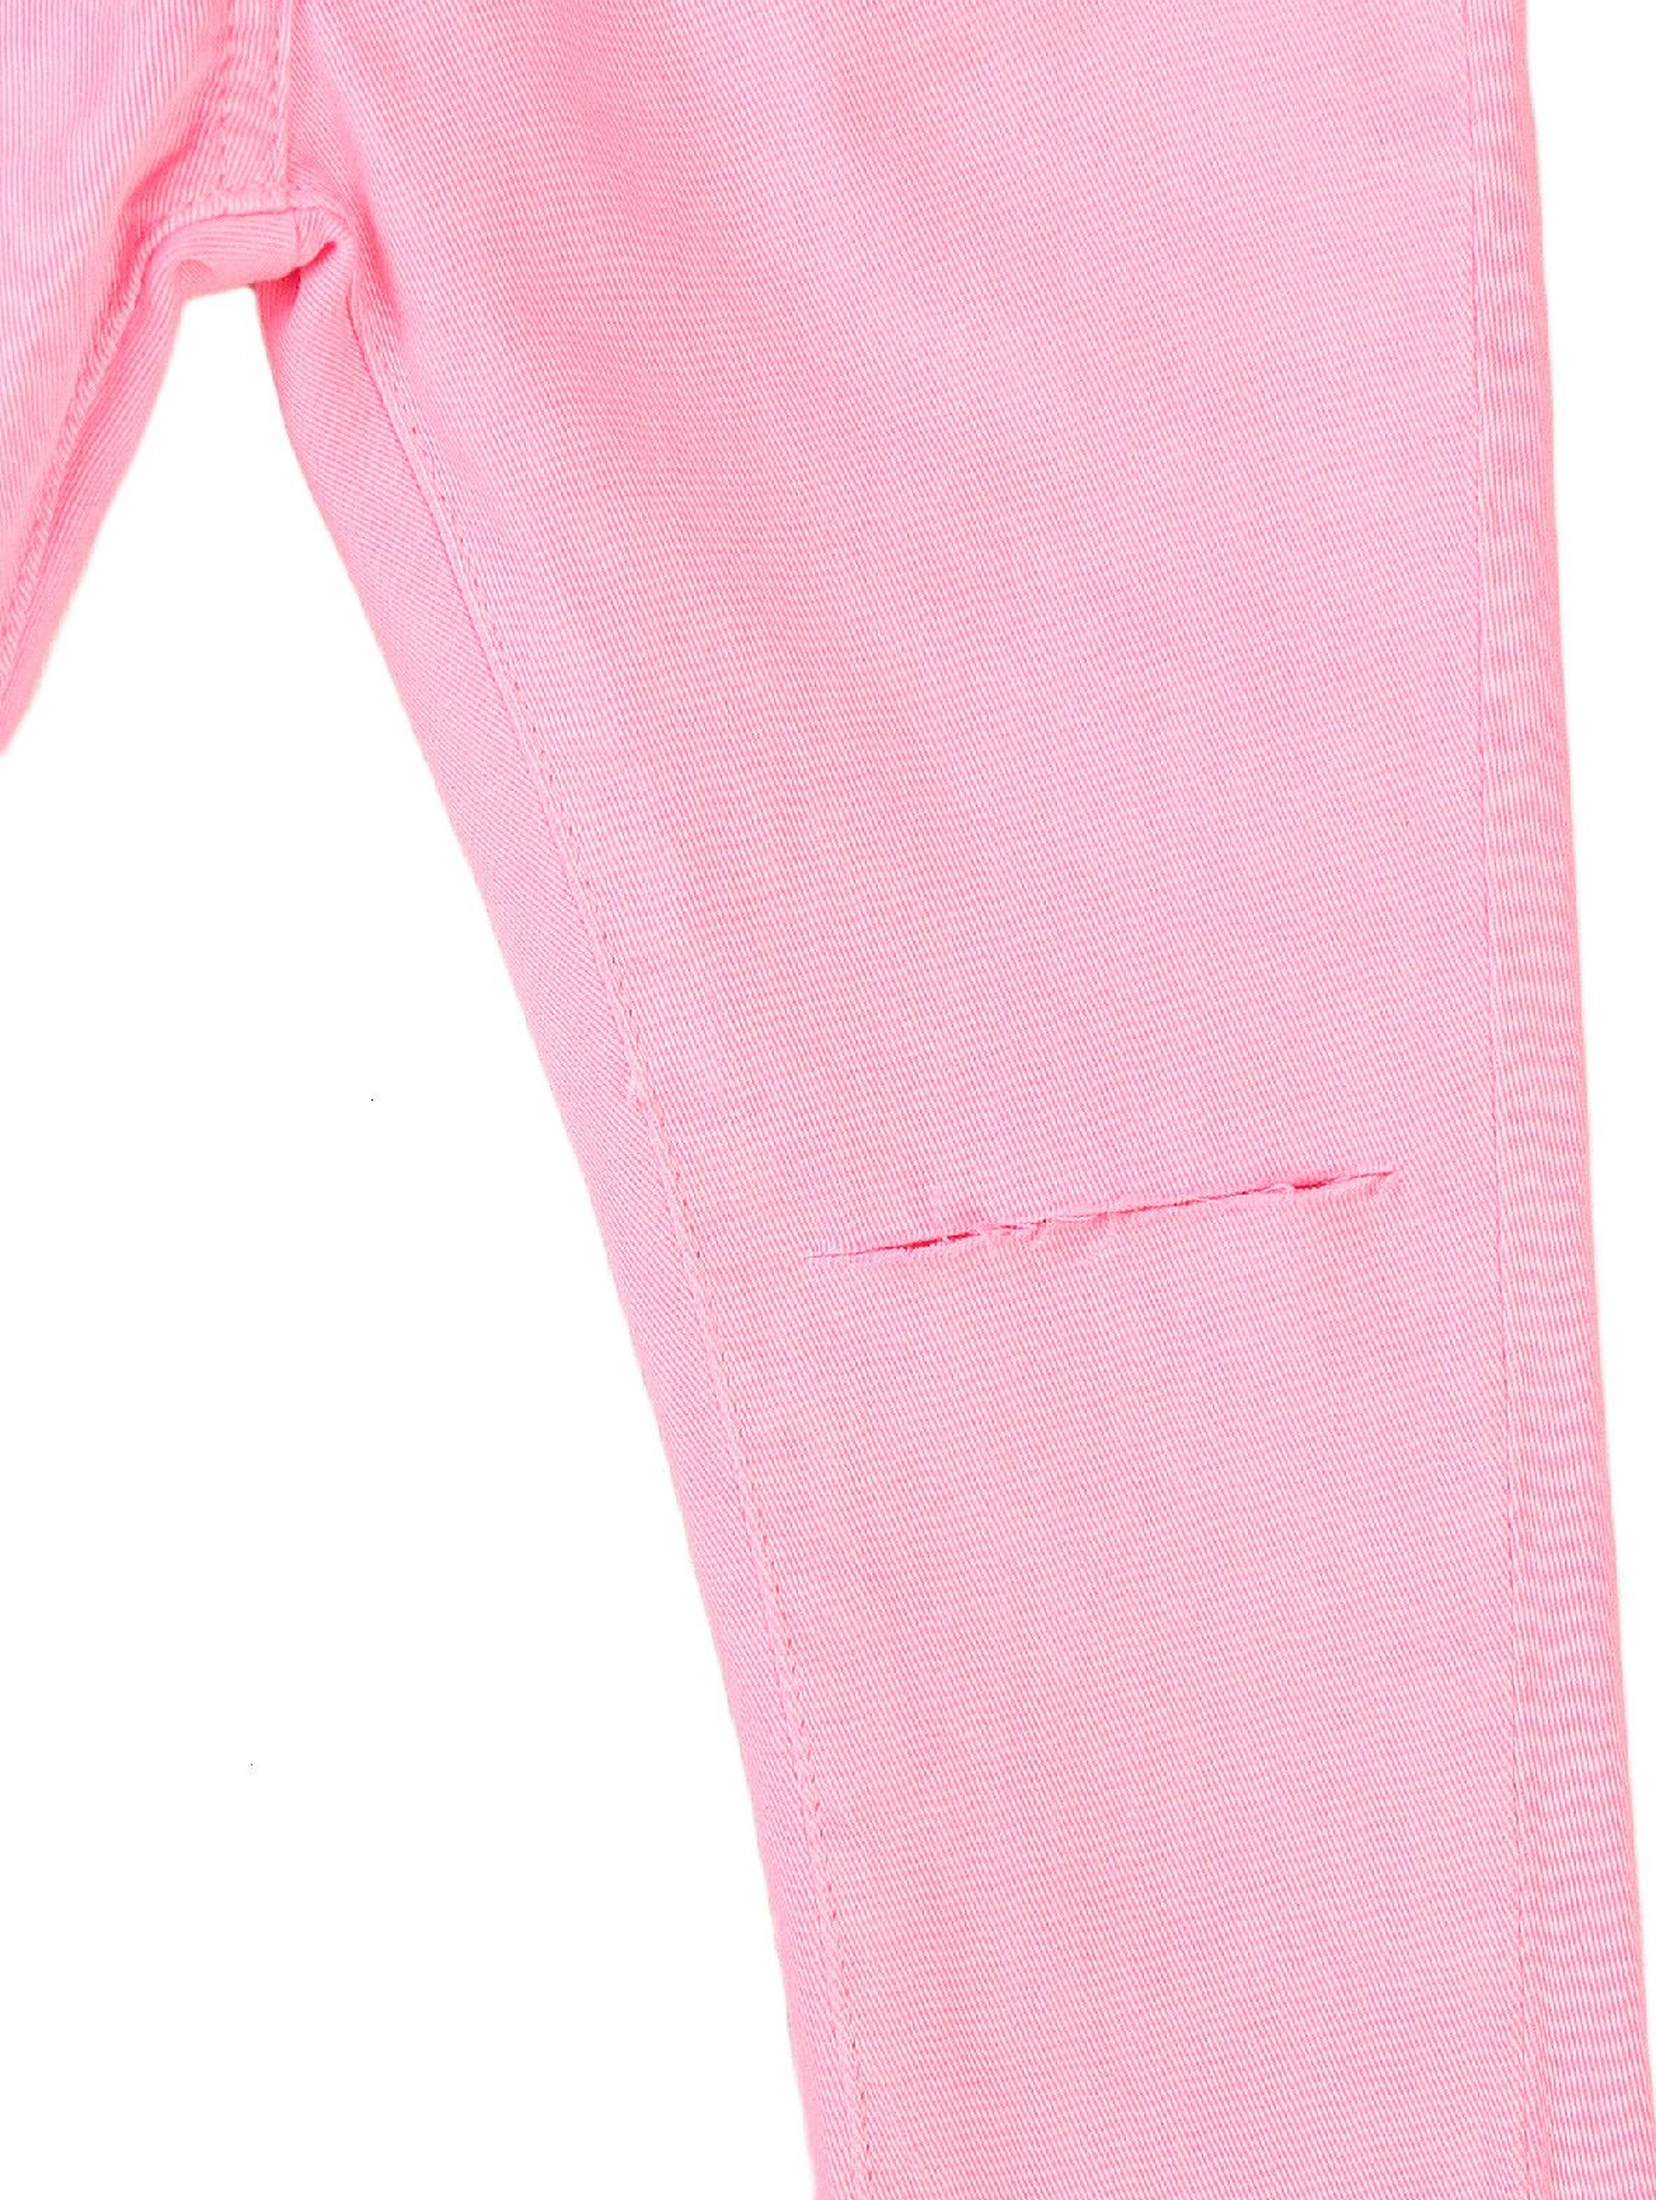 Spodnie dziewczęce w kolorze różowym